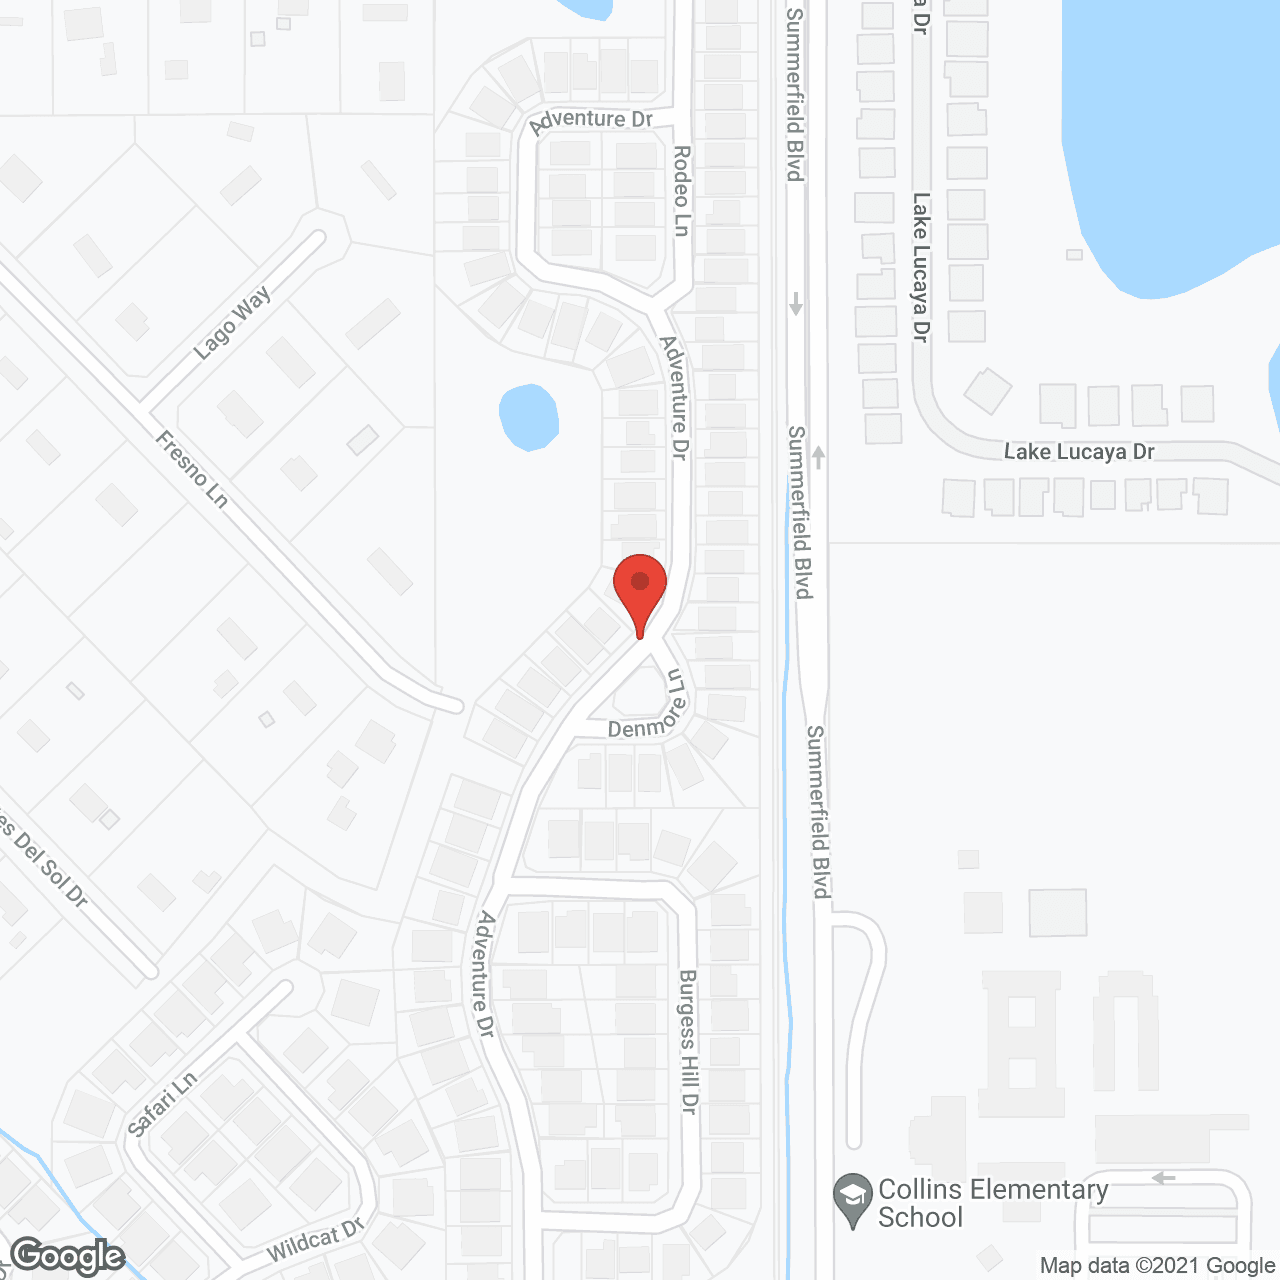 Acasa SeniorCare of Tampa Bay in google map